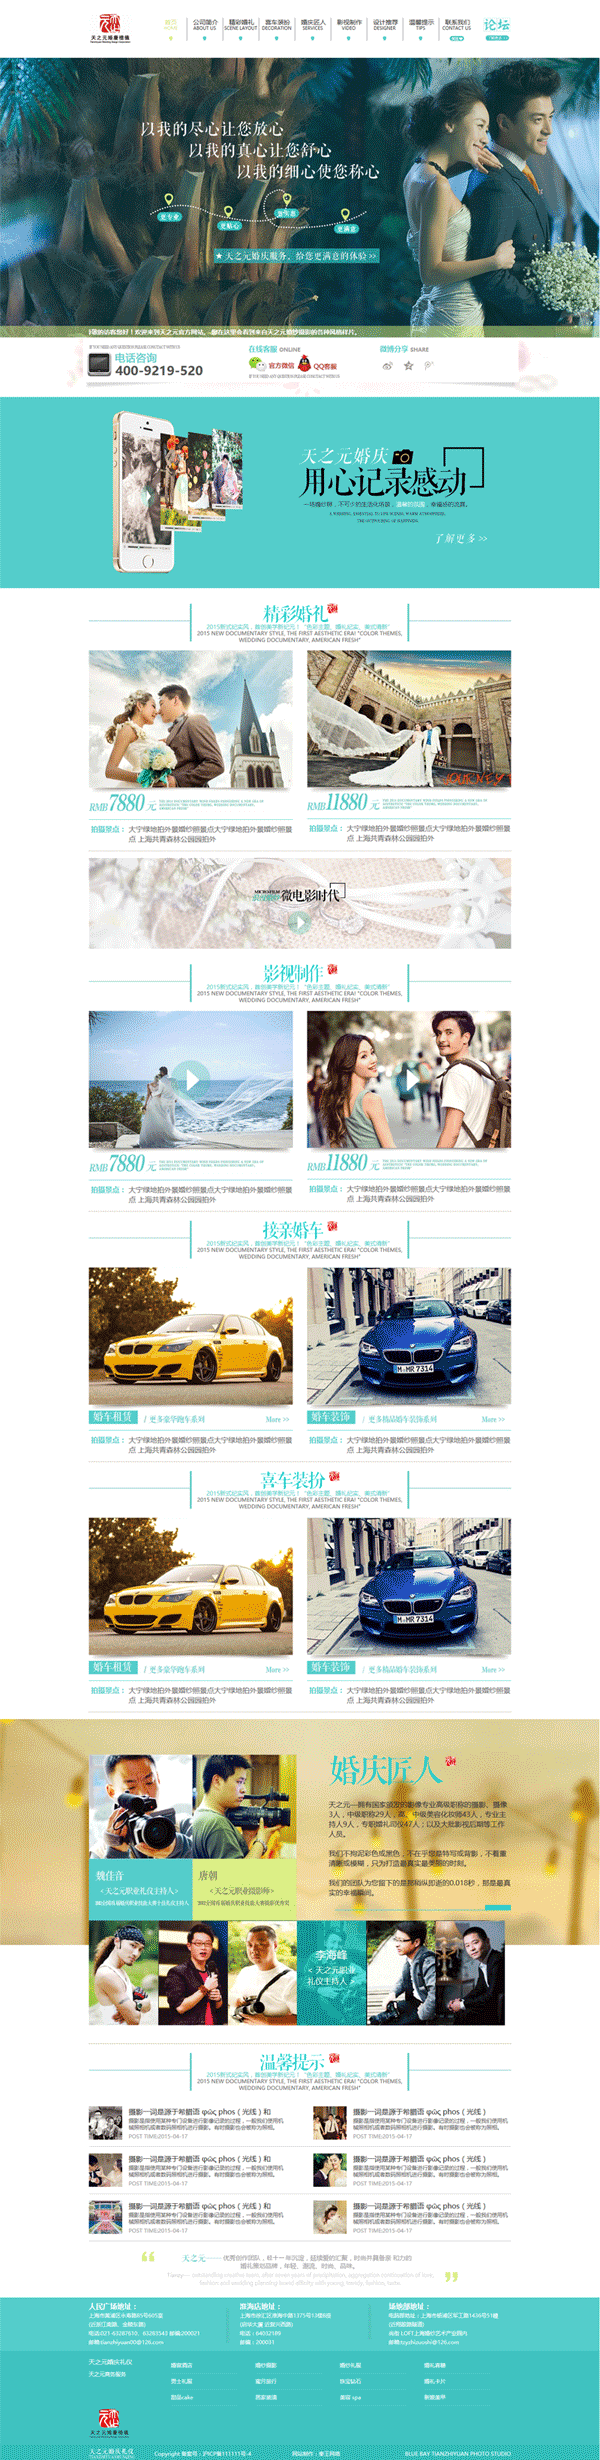 婚礼婚庆公司企业网站蓝色大气风格的模板下载